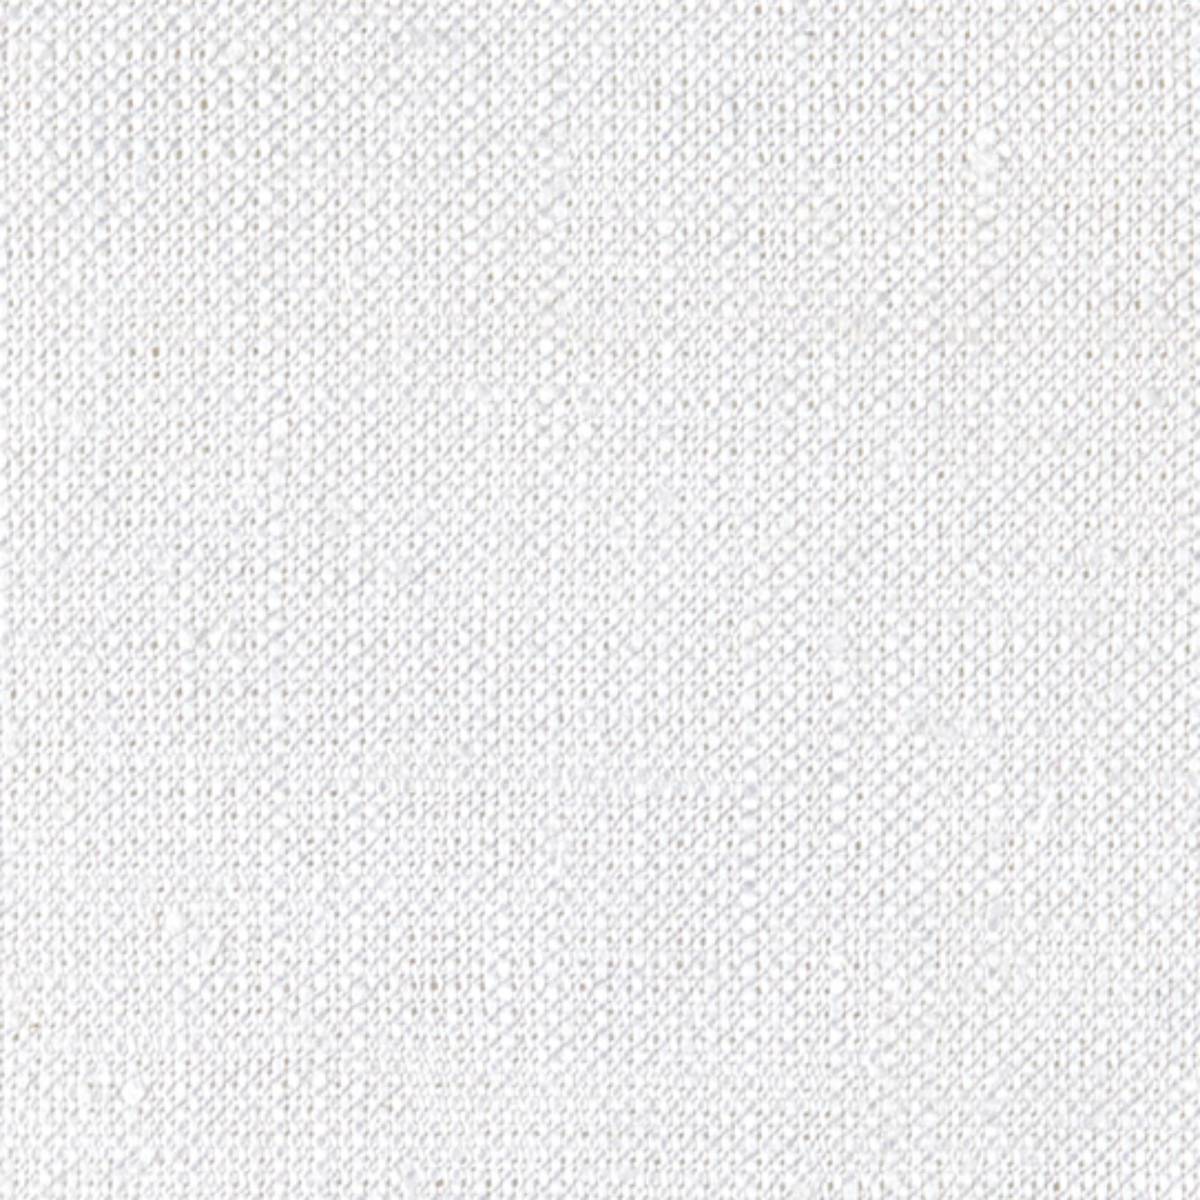 Swatch Sample of White Matouk Chelsea Linen Tissue Box Cover